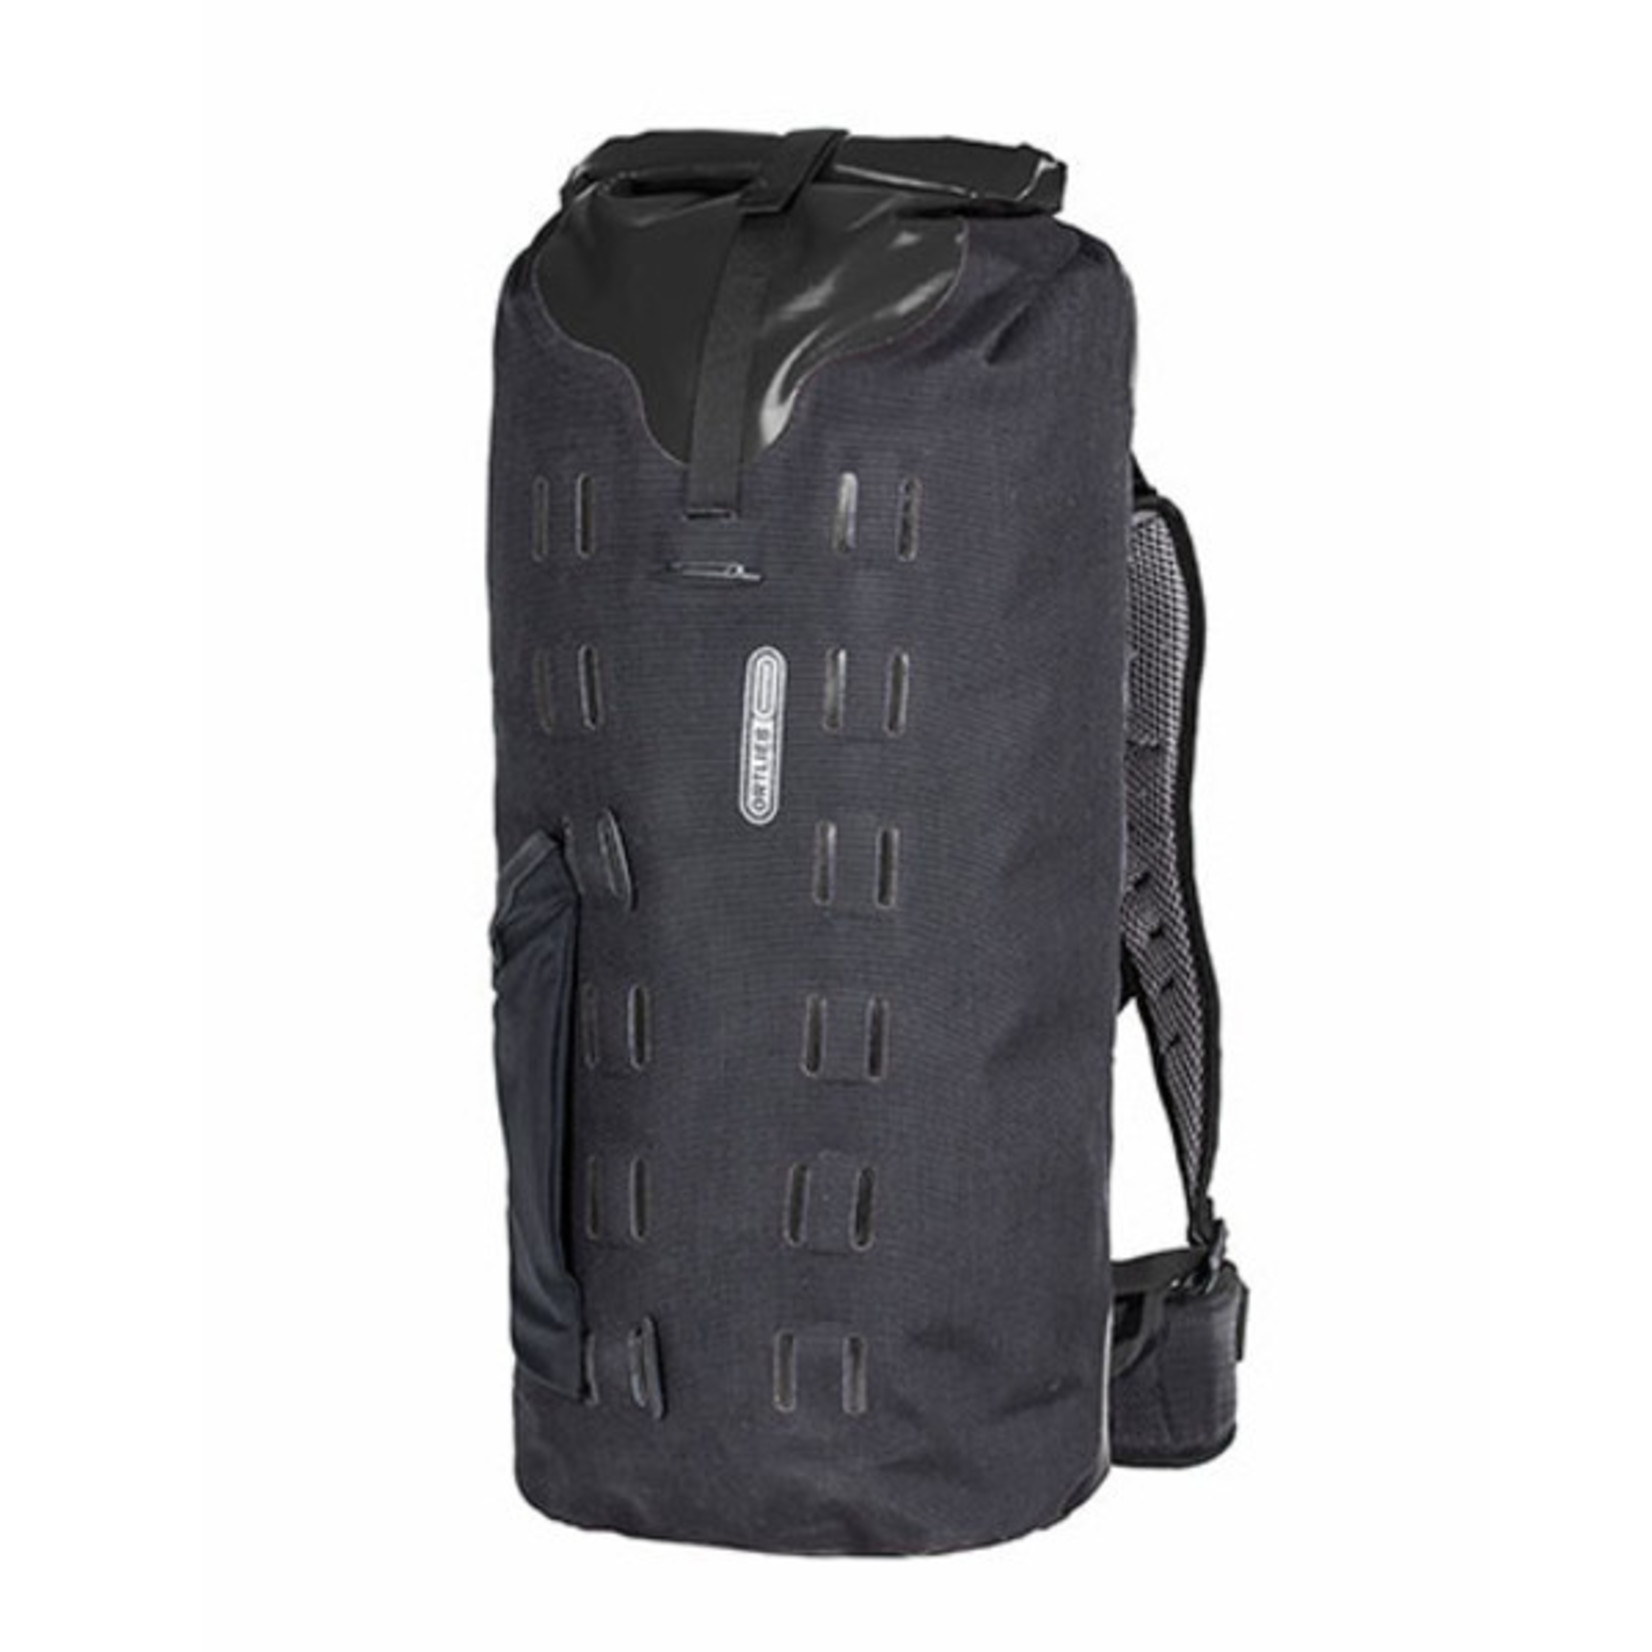 Ortlieb New Ortlieb R17101 Gear-Pack Backpack Waterproof- 32Liter Black